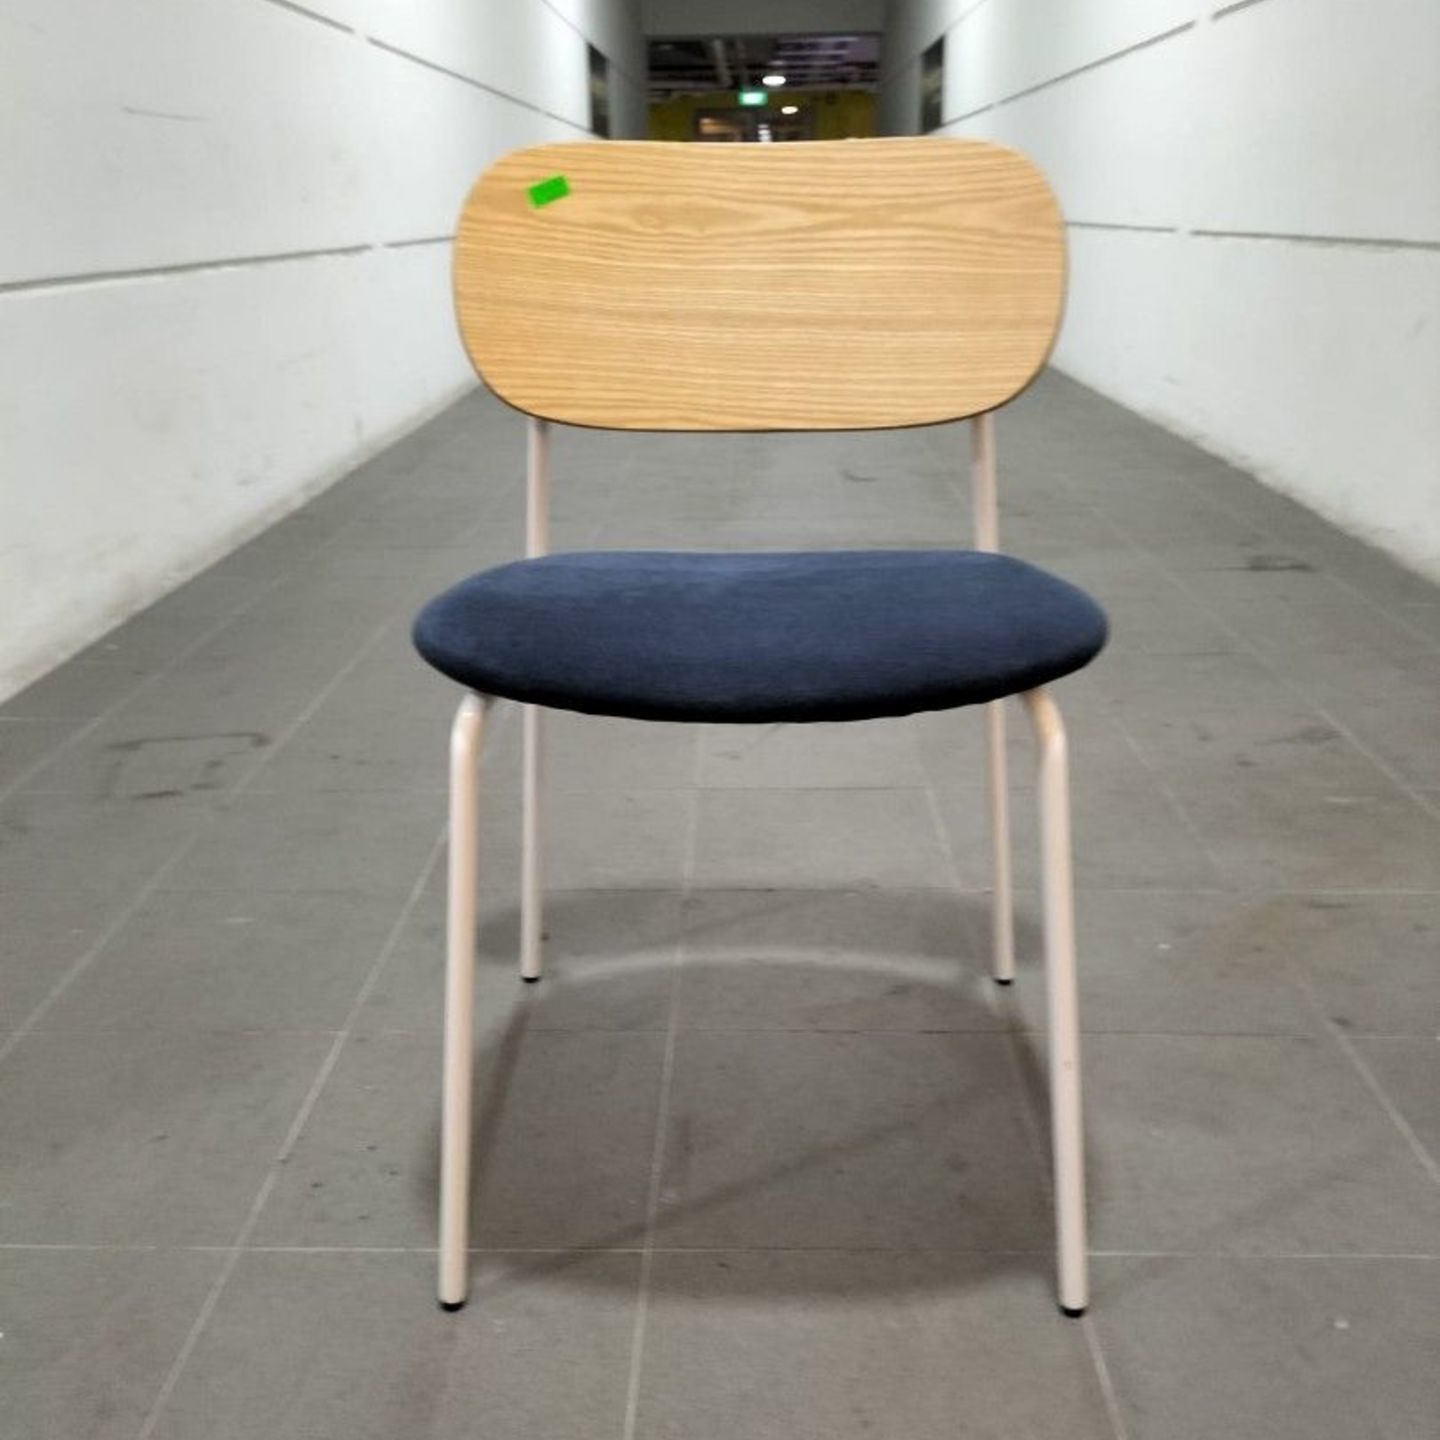 FIGO Chair - one piece only